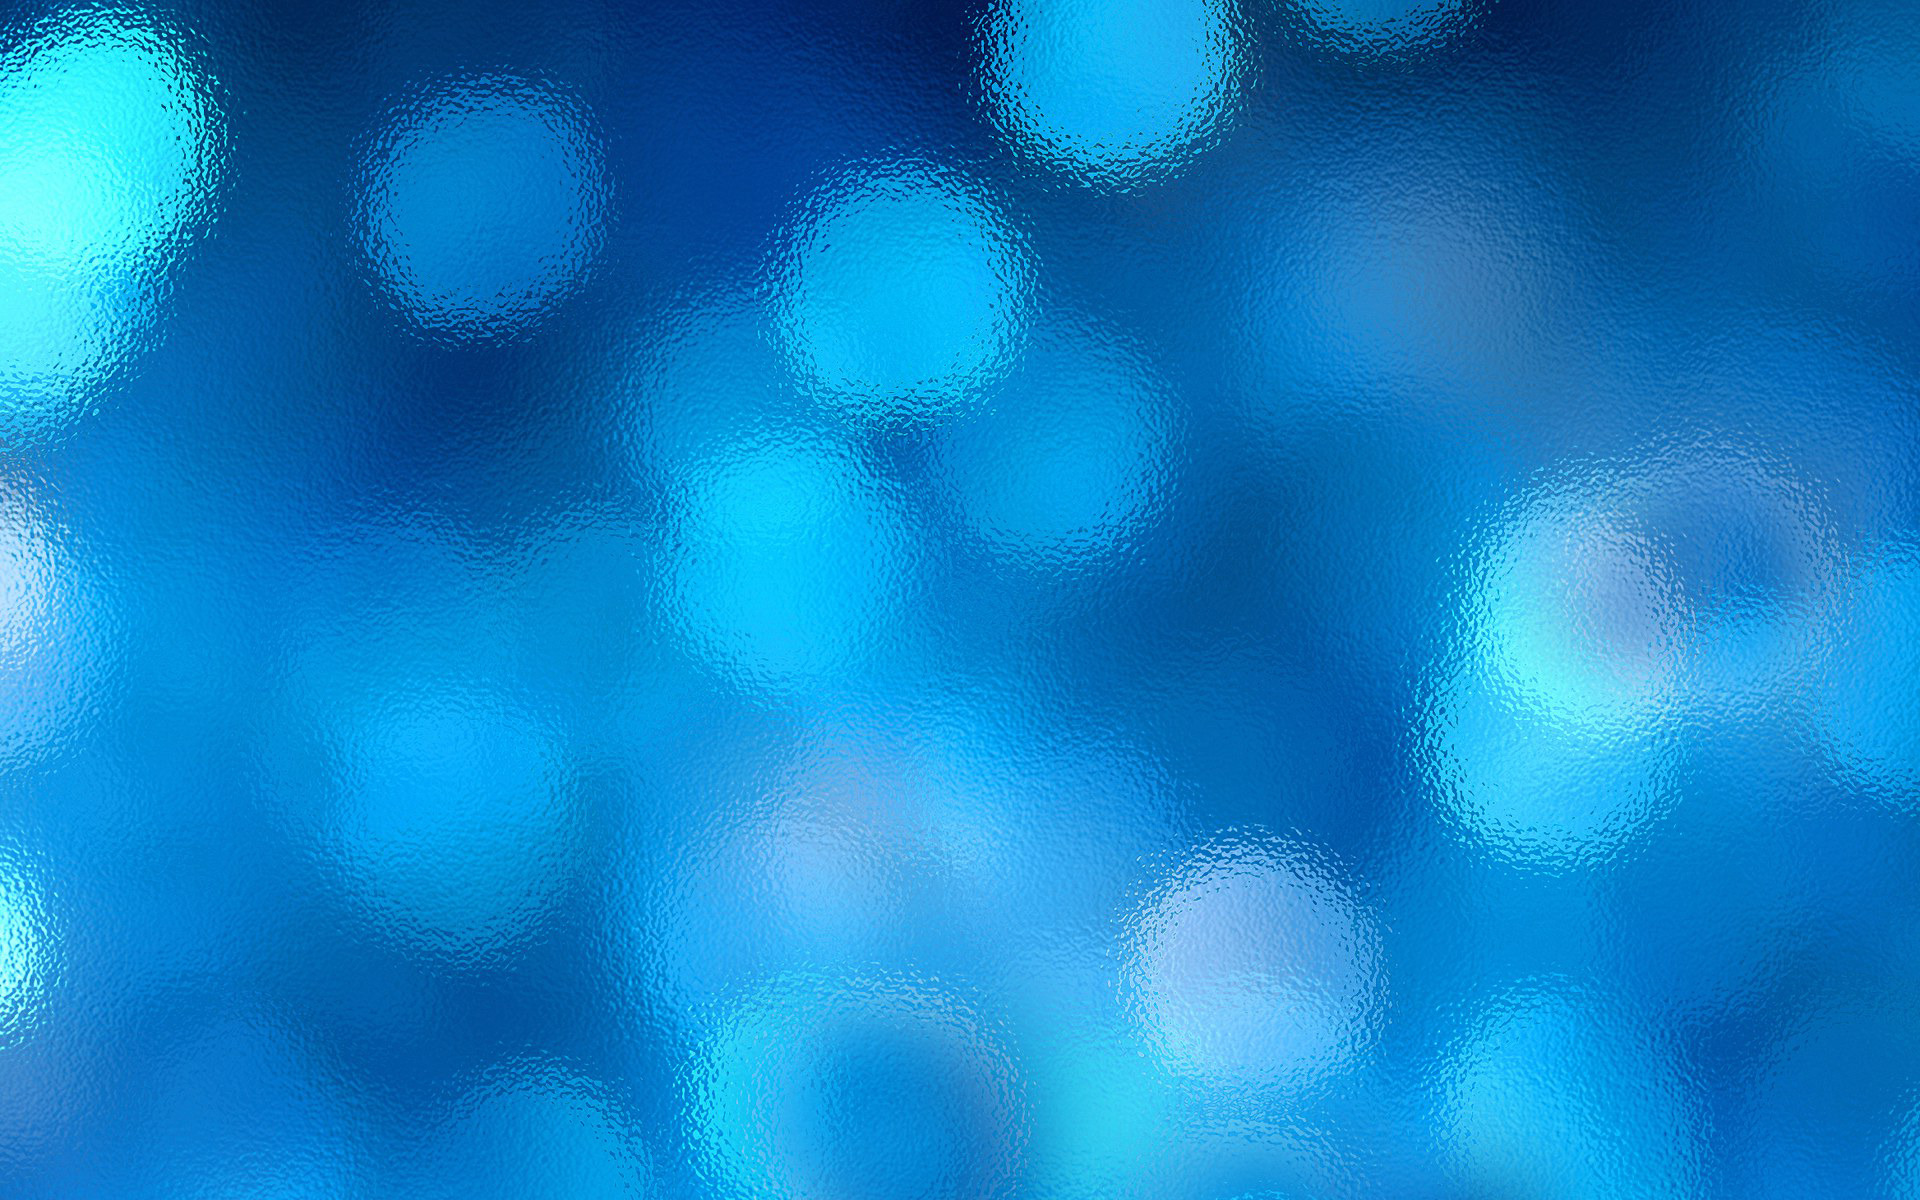 Blurry Desktop Wallpaper - WallpaperSafari